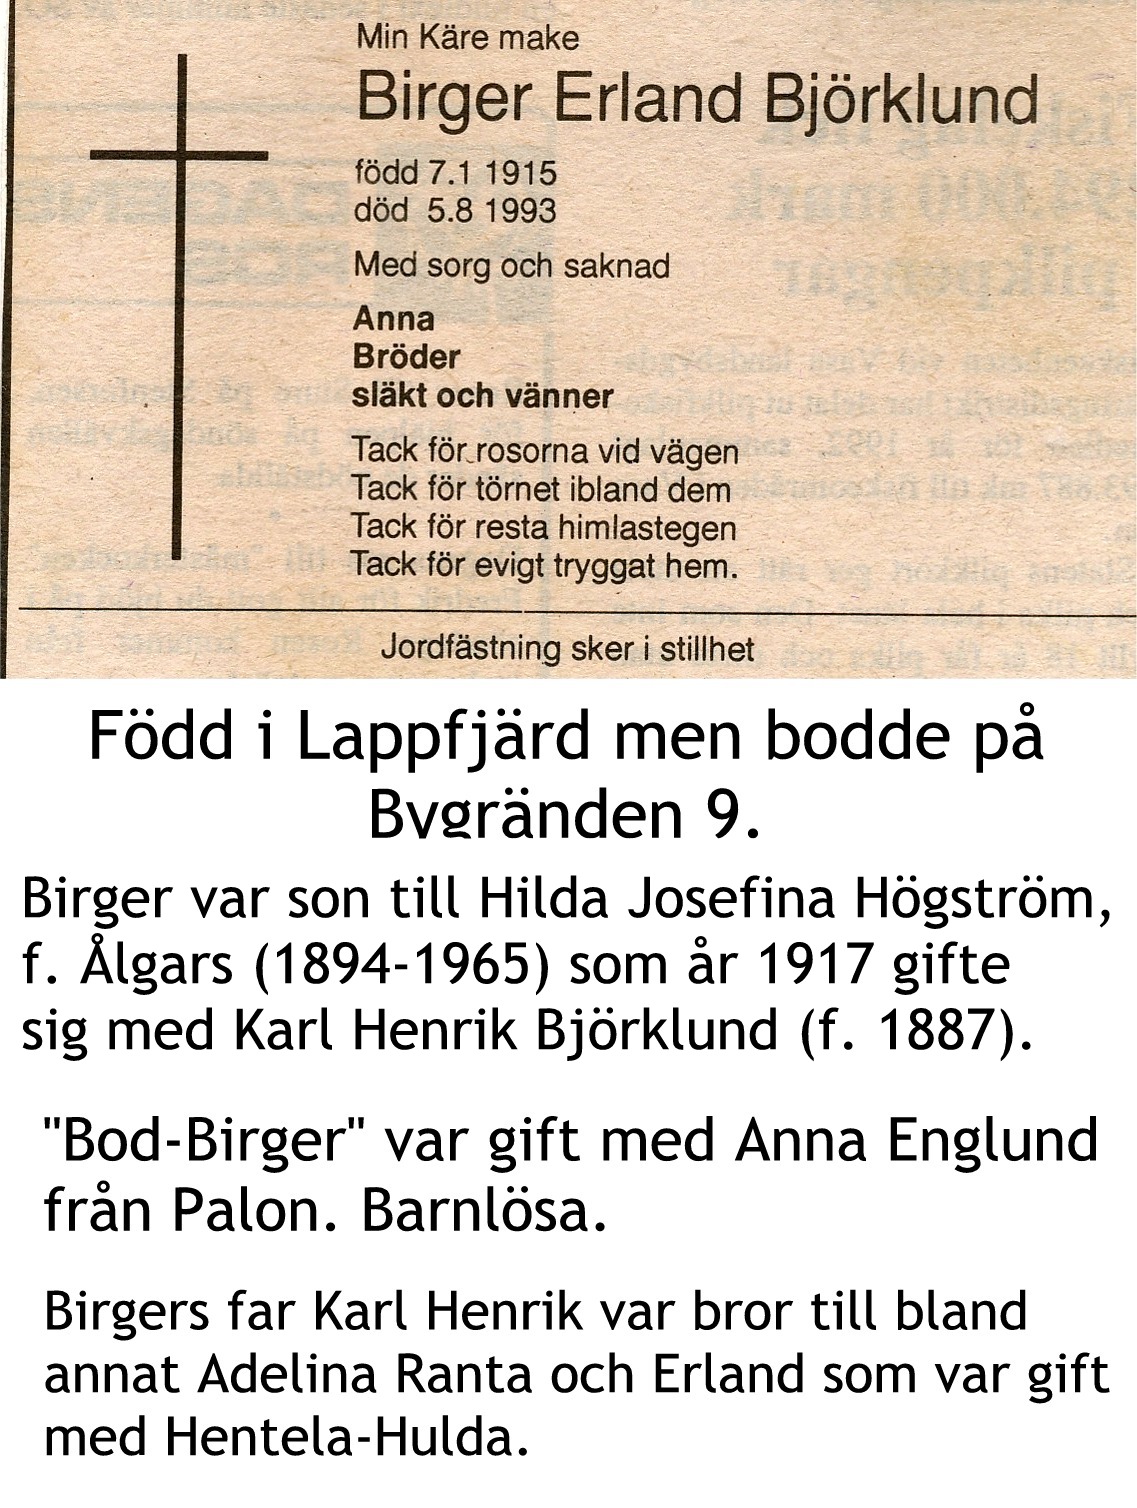 Björklund Birger Erland